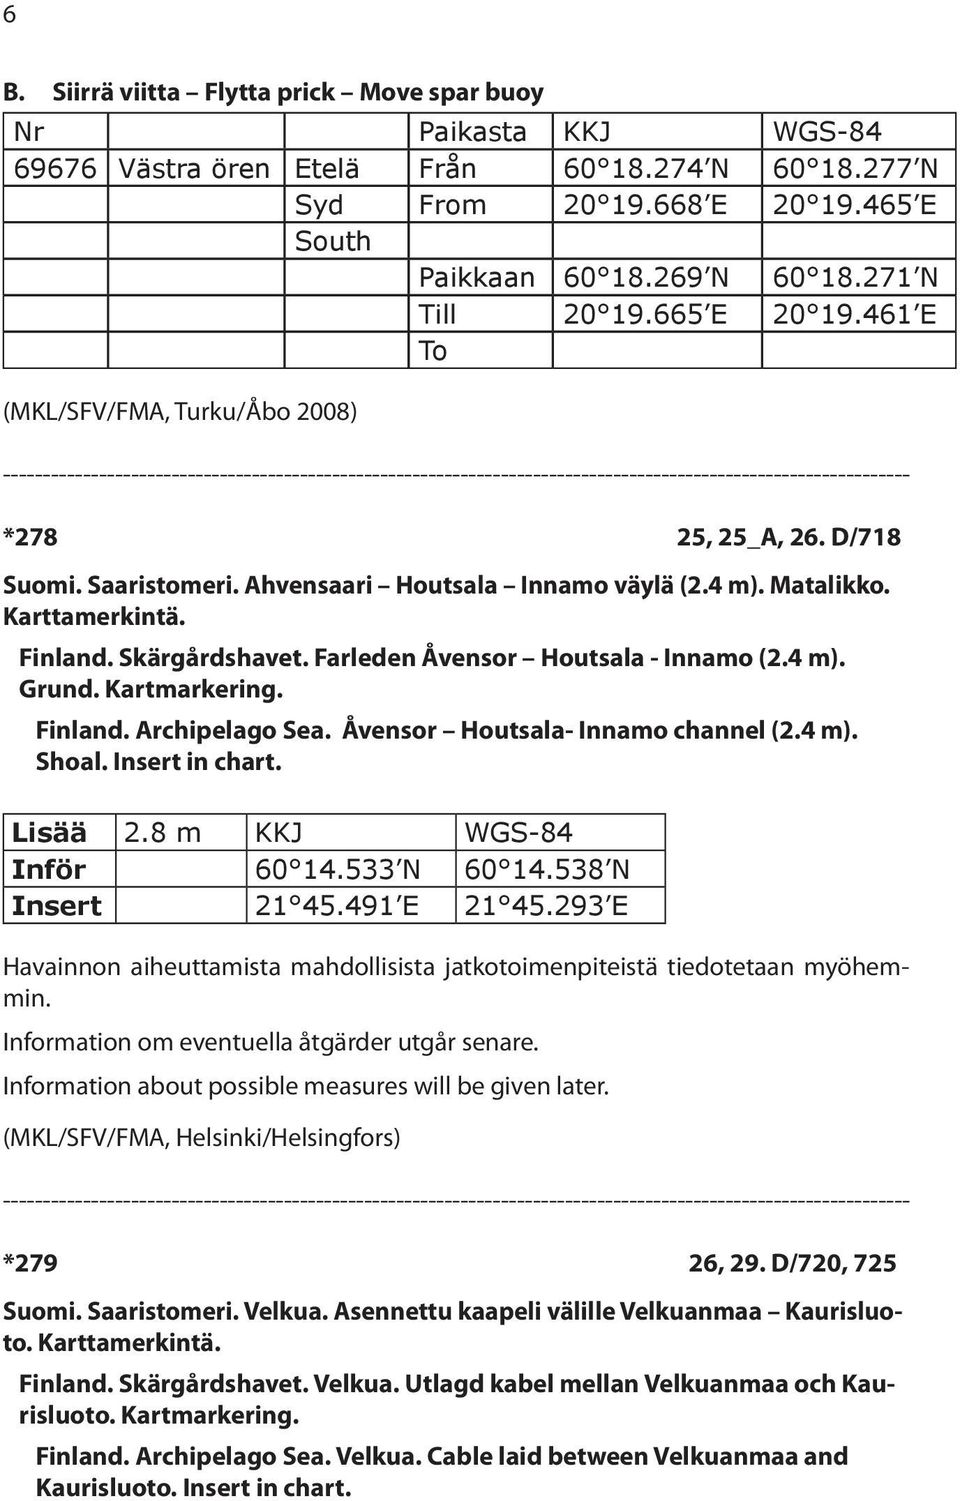 Skärgårdshavet. Farleden Åvensor Houtsala - Innamo (2.4 m). Grund. Kartmarkering. Finland. Archipelago Sea. Åvensor Houtsala- Innamo channel (2.4 m). Shoal. Insert in chart. Lisää 2.